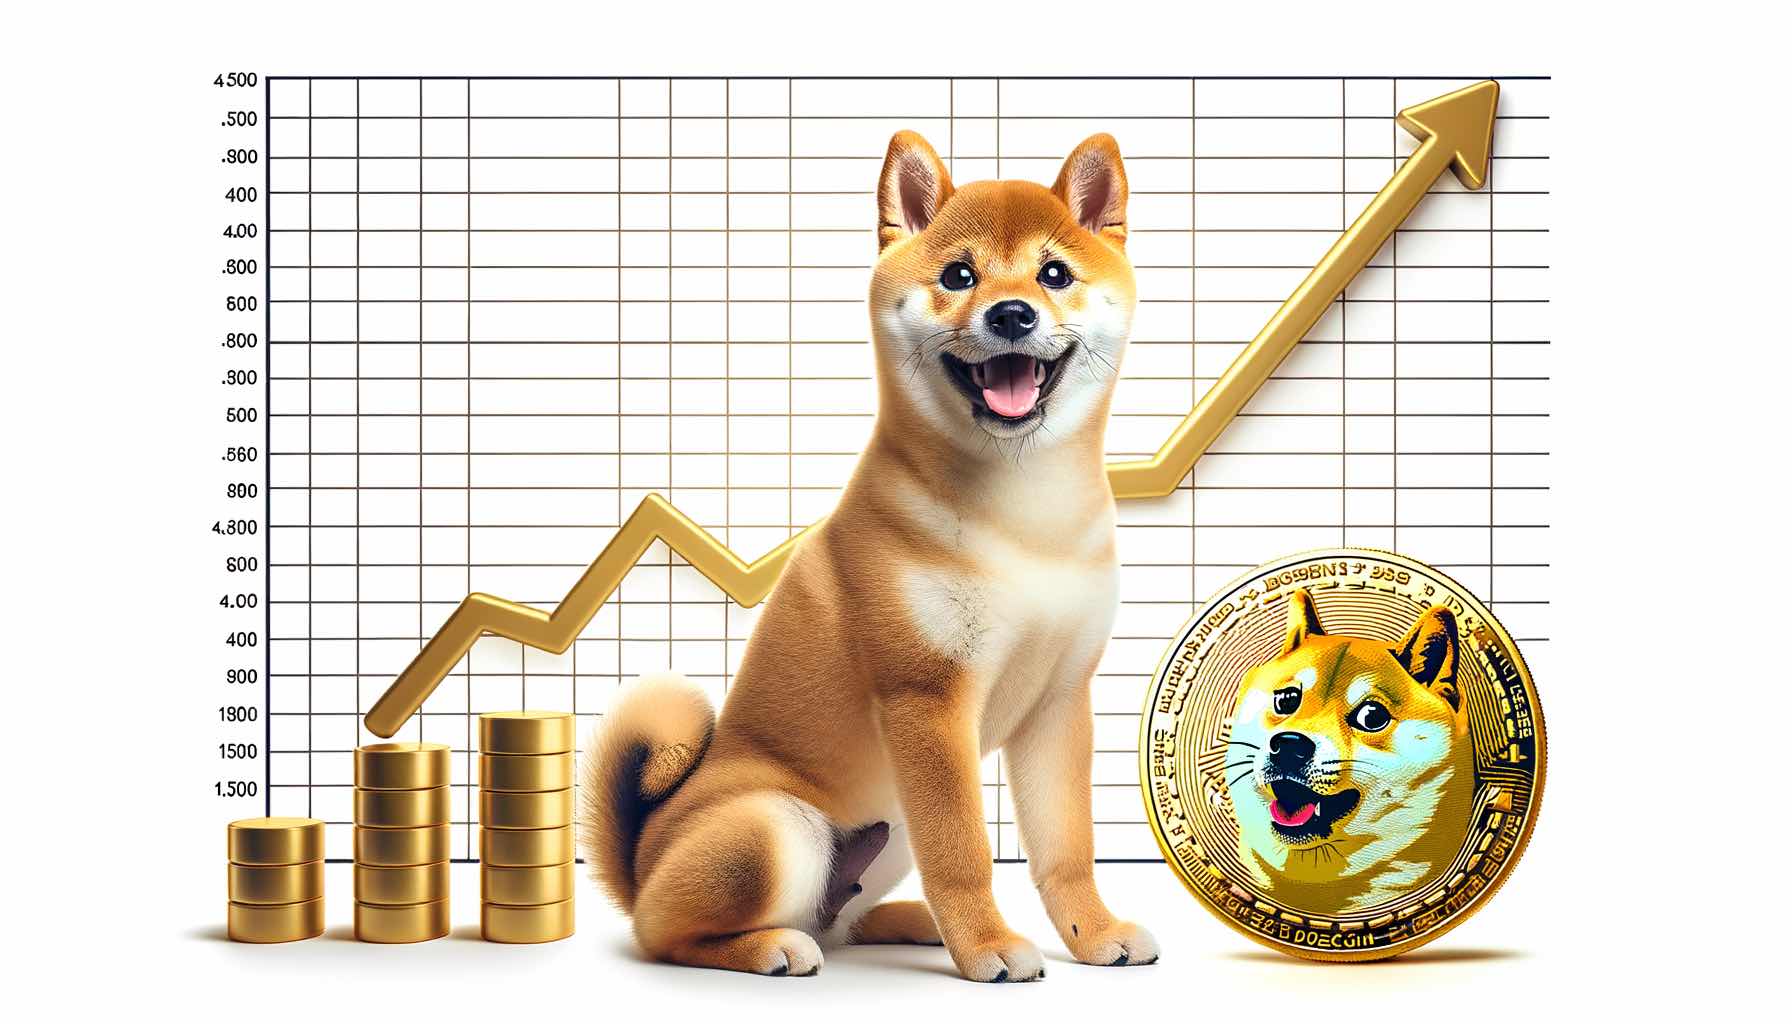 قیمت Shiba Inu کاهش یافت اما Dogecoin20 ICO از 260 هزار دلار در ساعات کاری عبور کرد